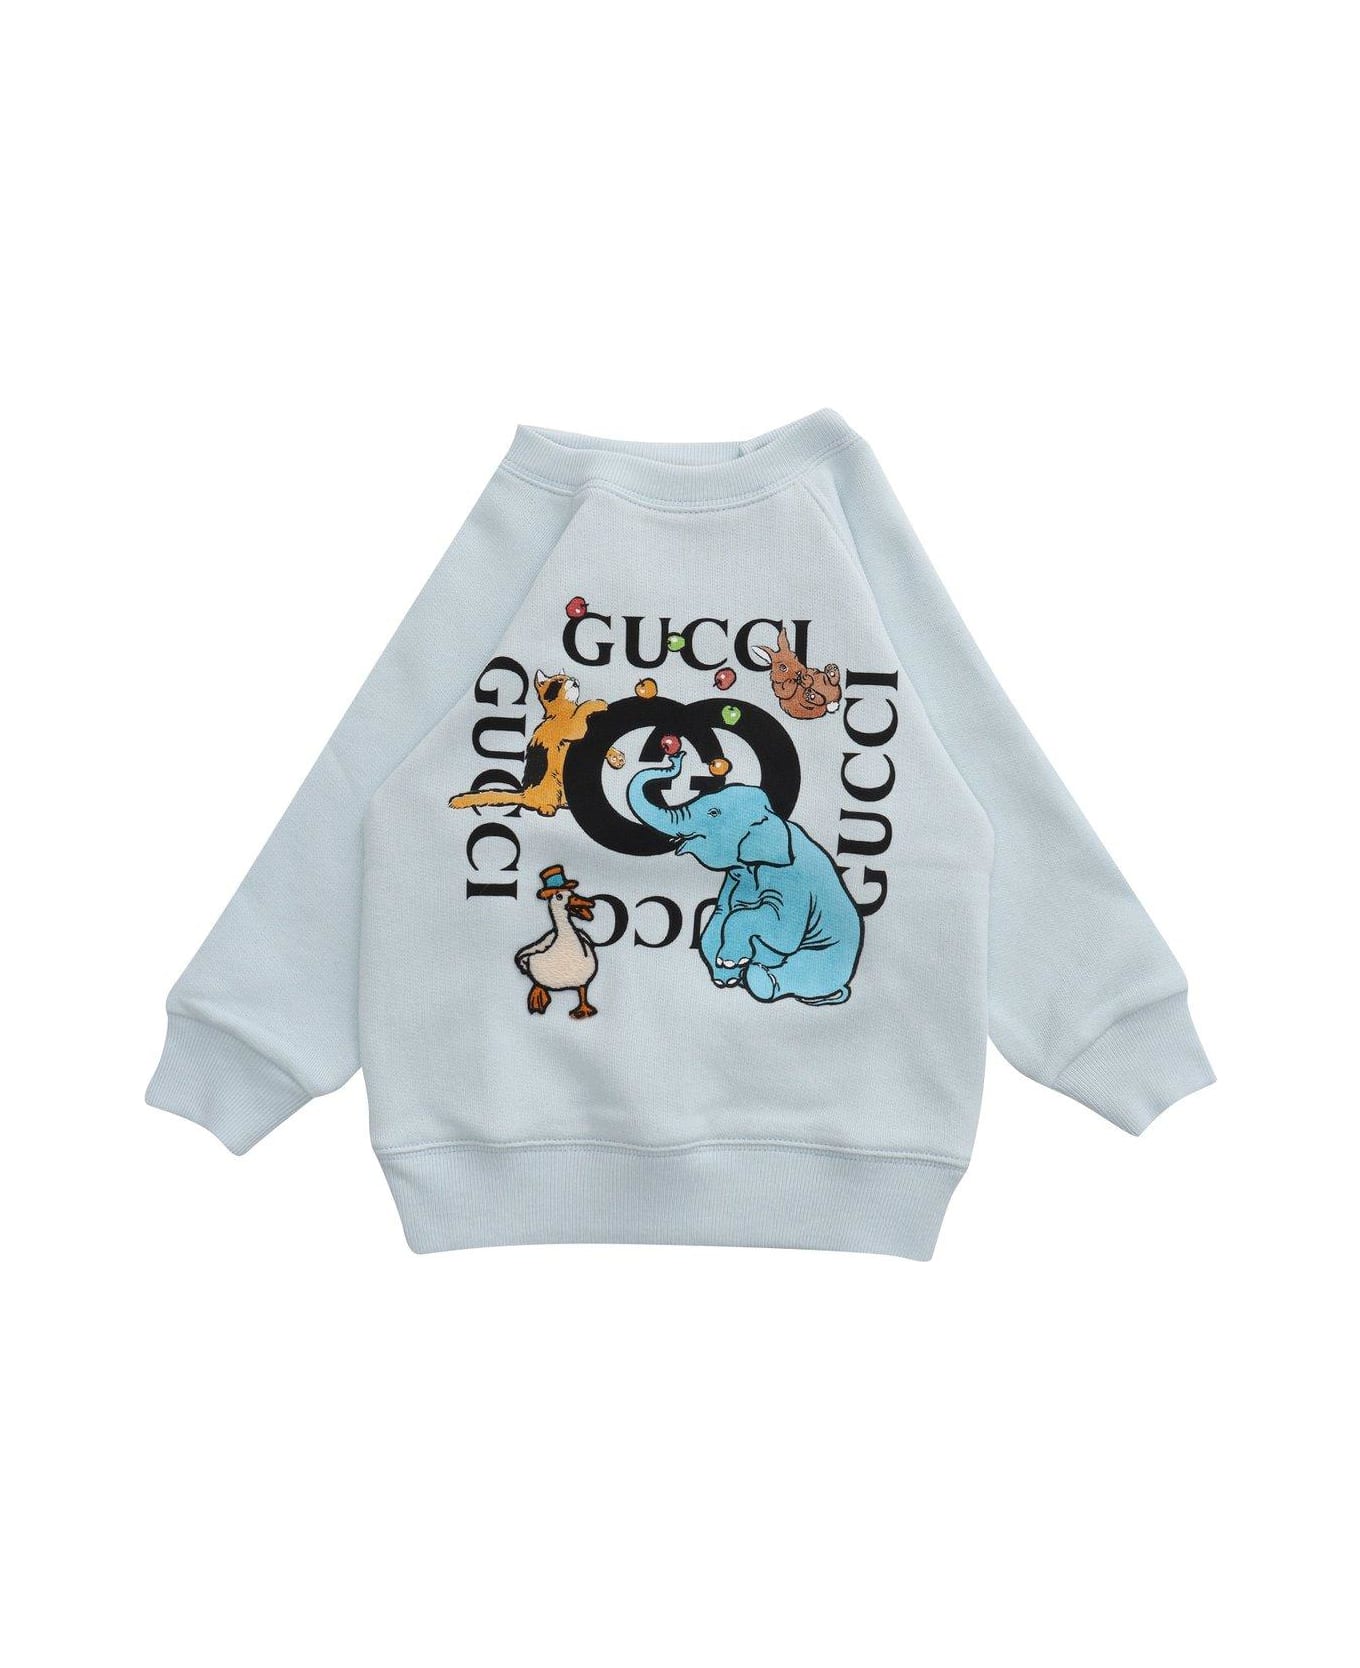 Gucci Animal Logo Printed Crewneck Sweatshirt - Cielo Multicolor